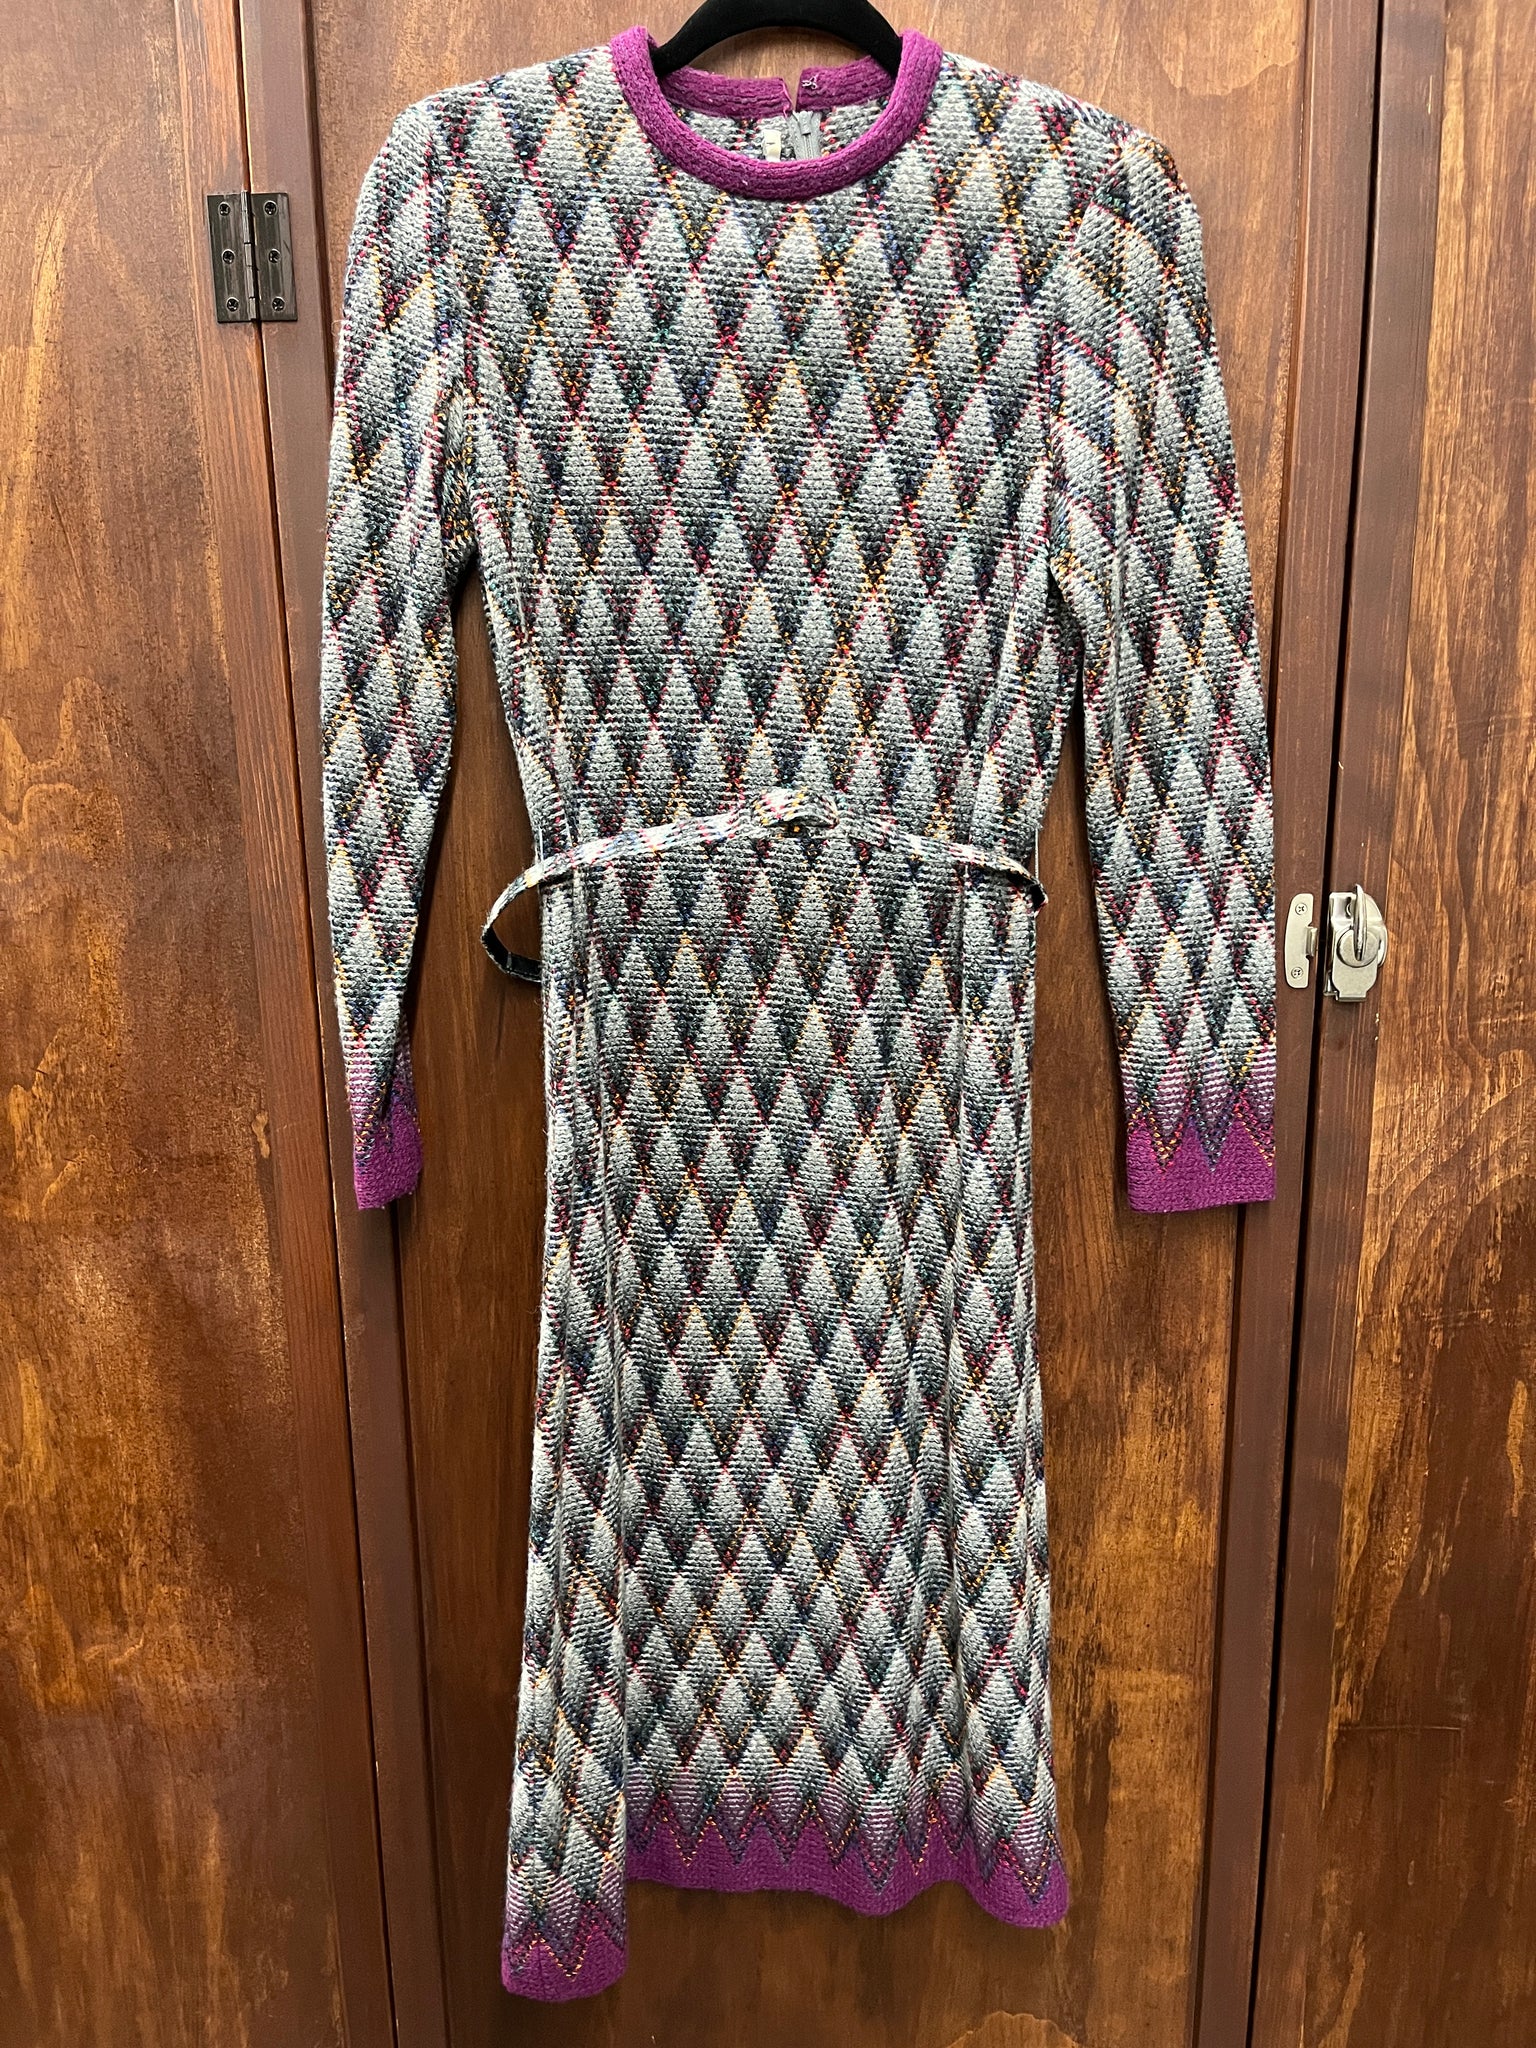 1960S DRESS- multicolor diamond knit w/ belt